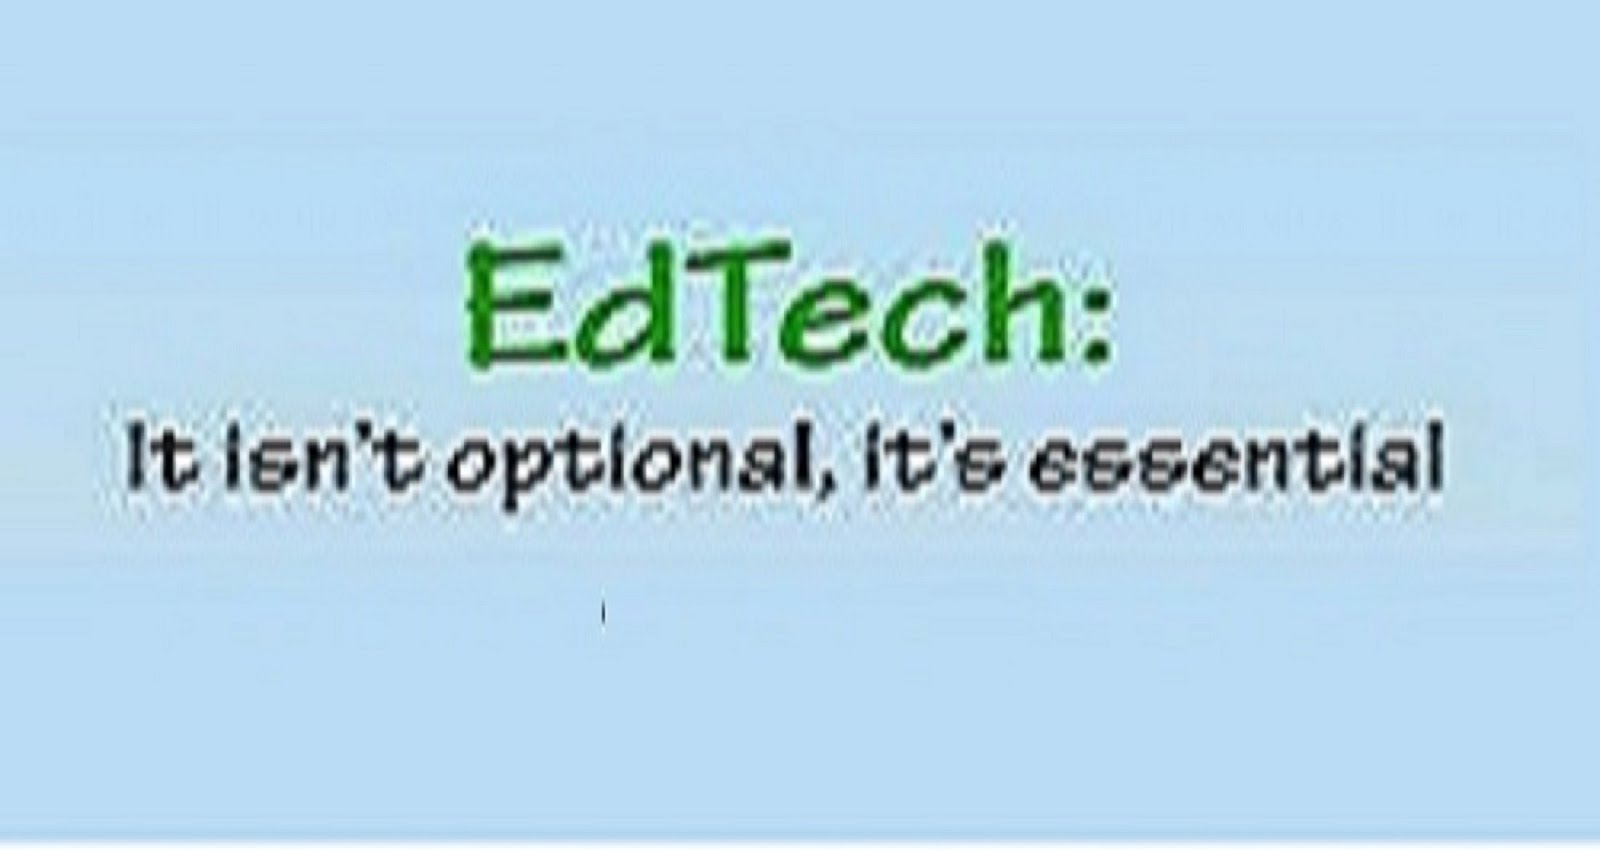 EducationblogTech